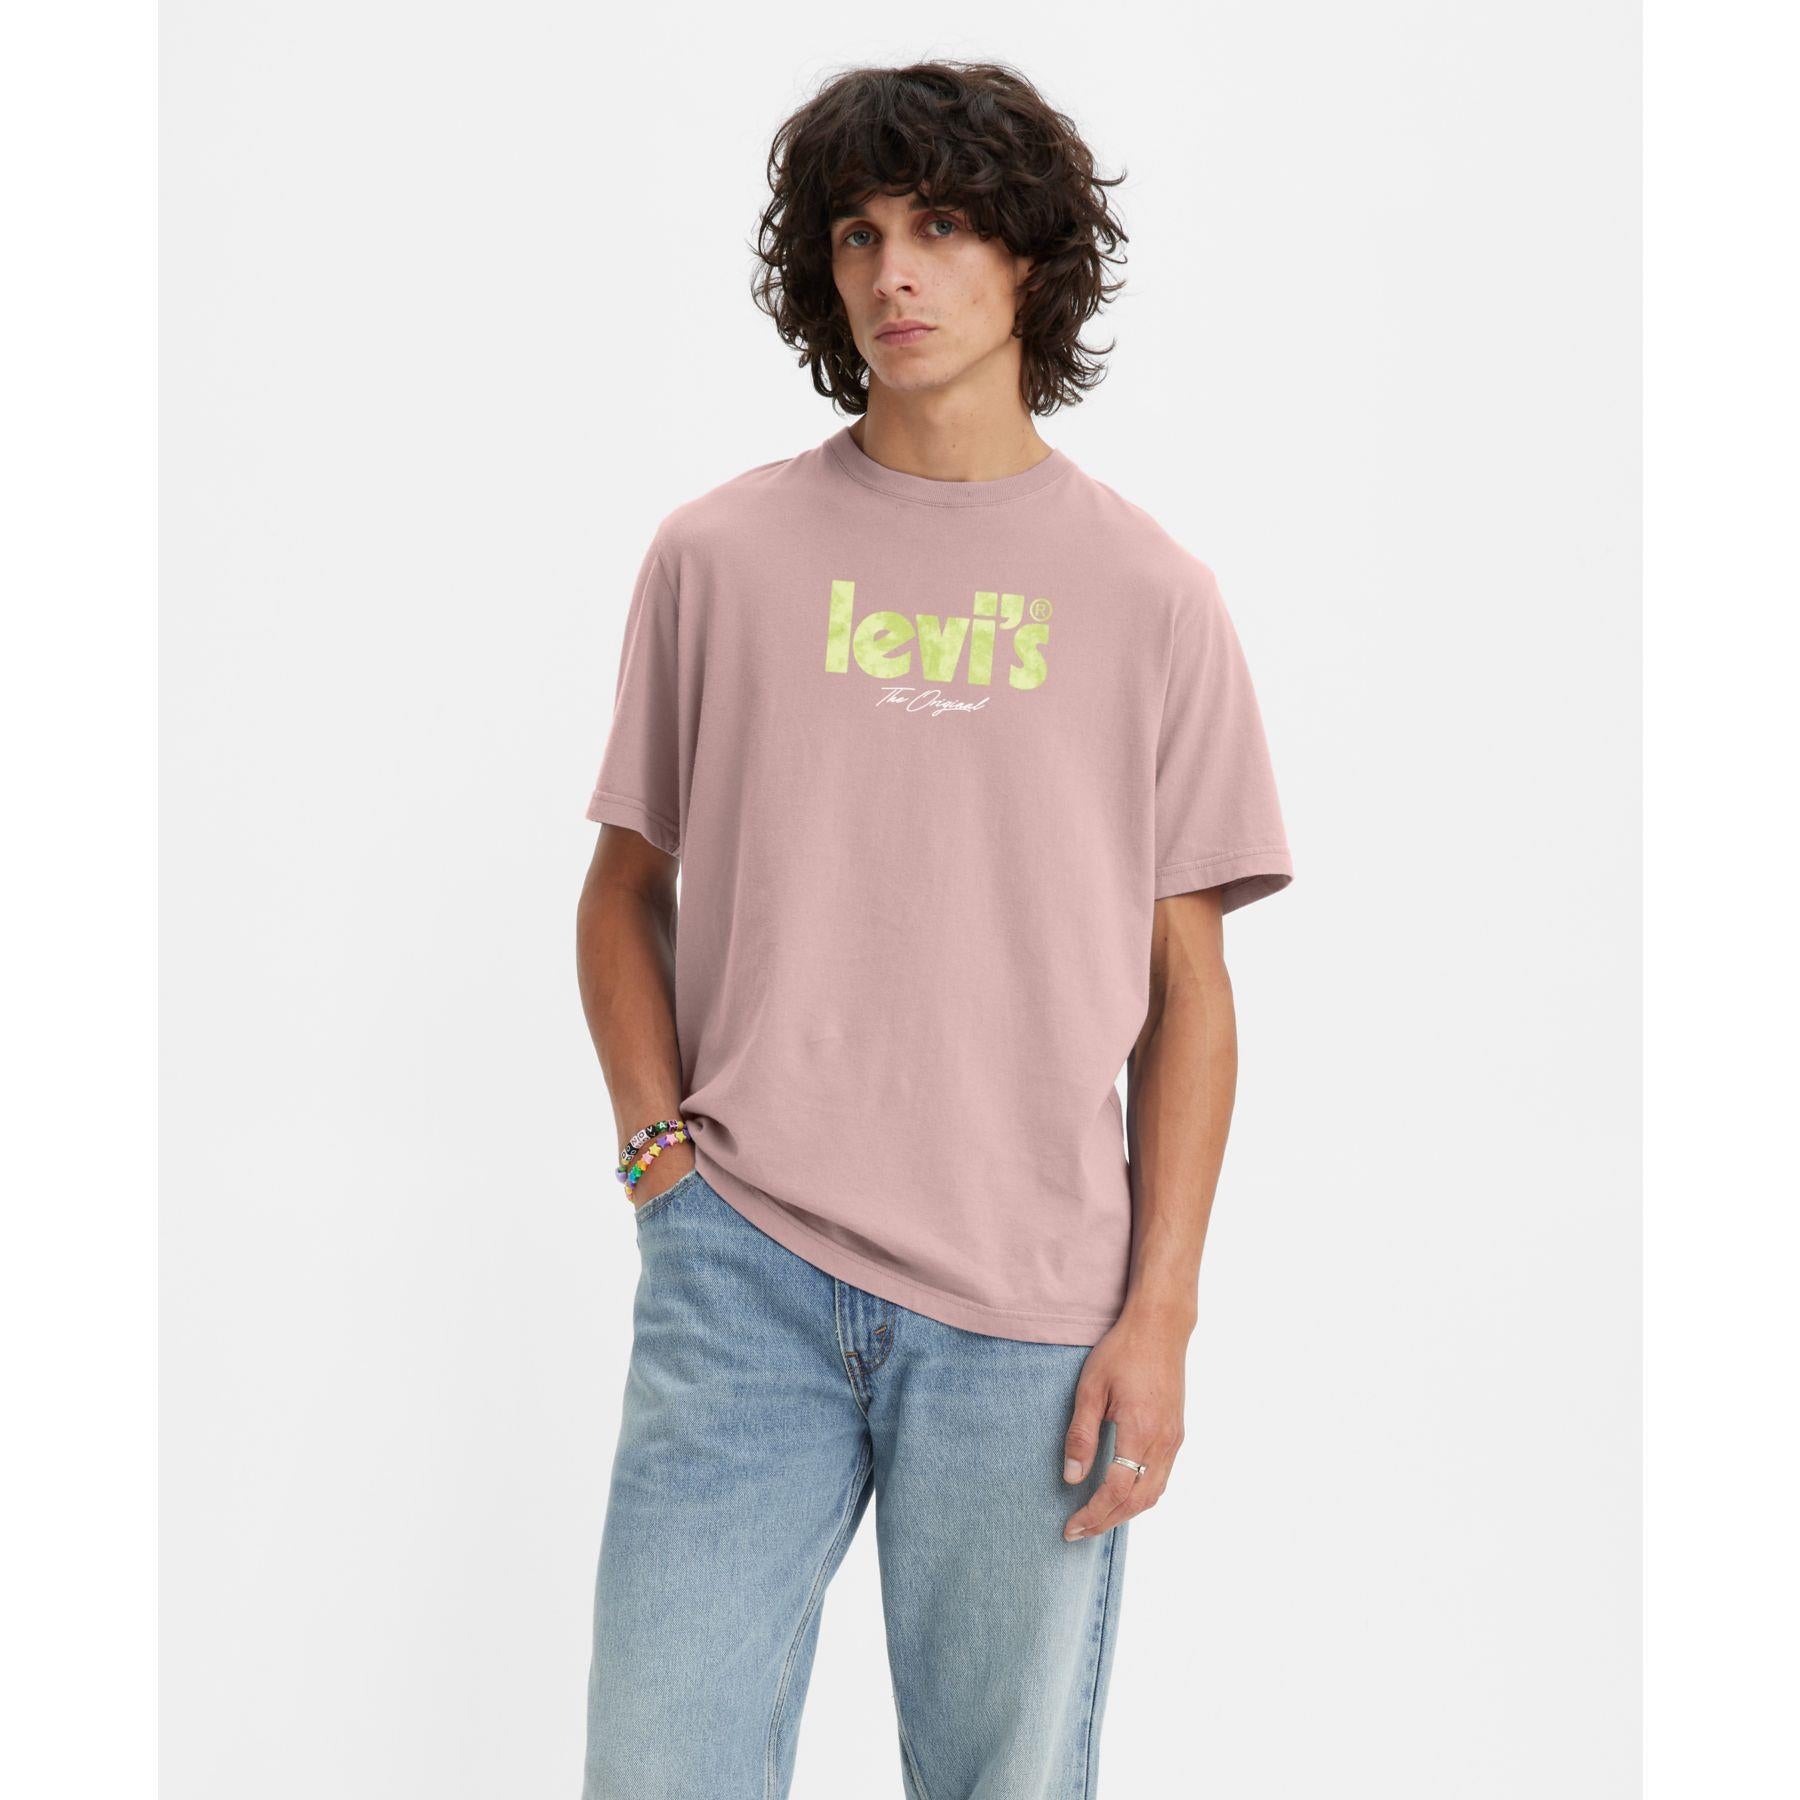 Levi's T/Shirt Homme 16143-0924 – Boutique Designers